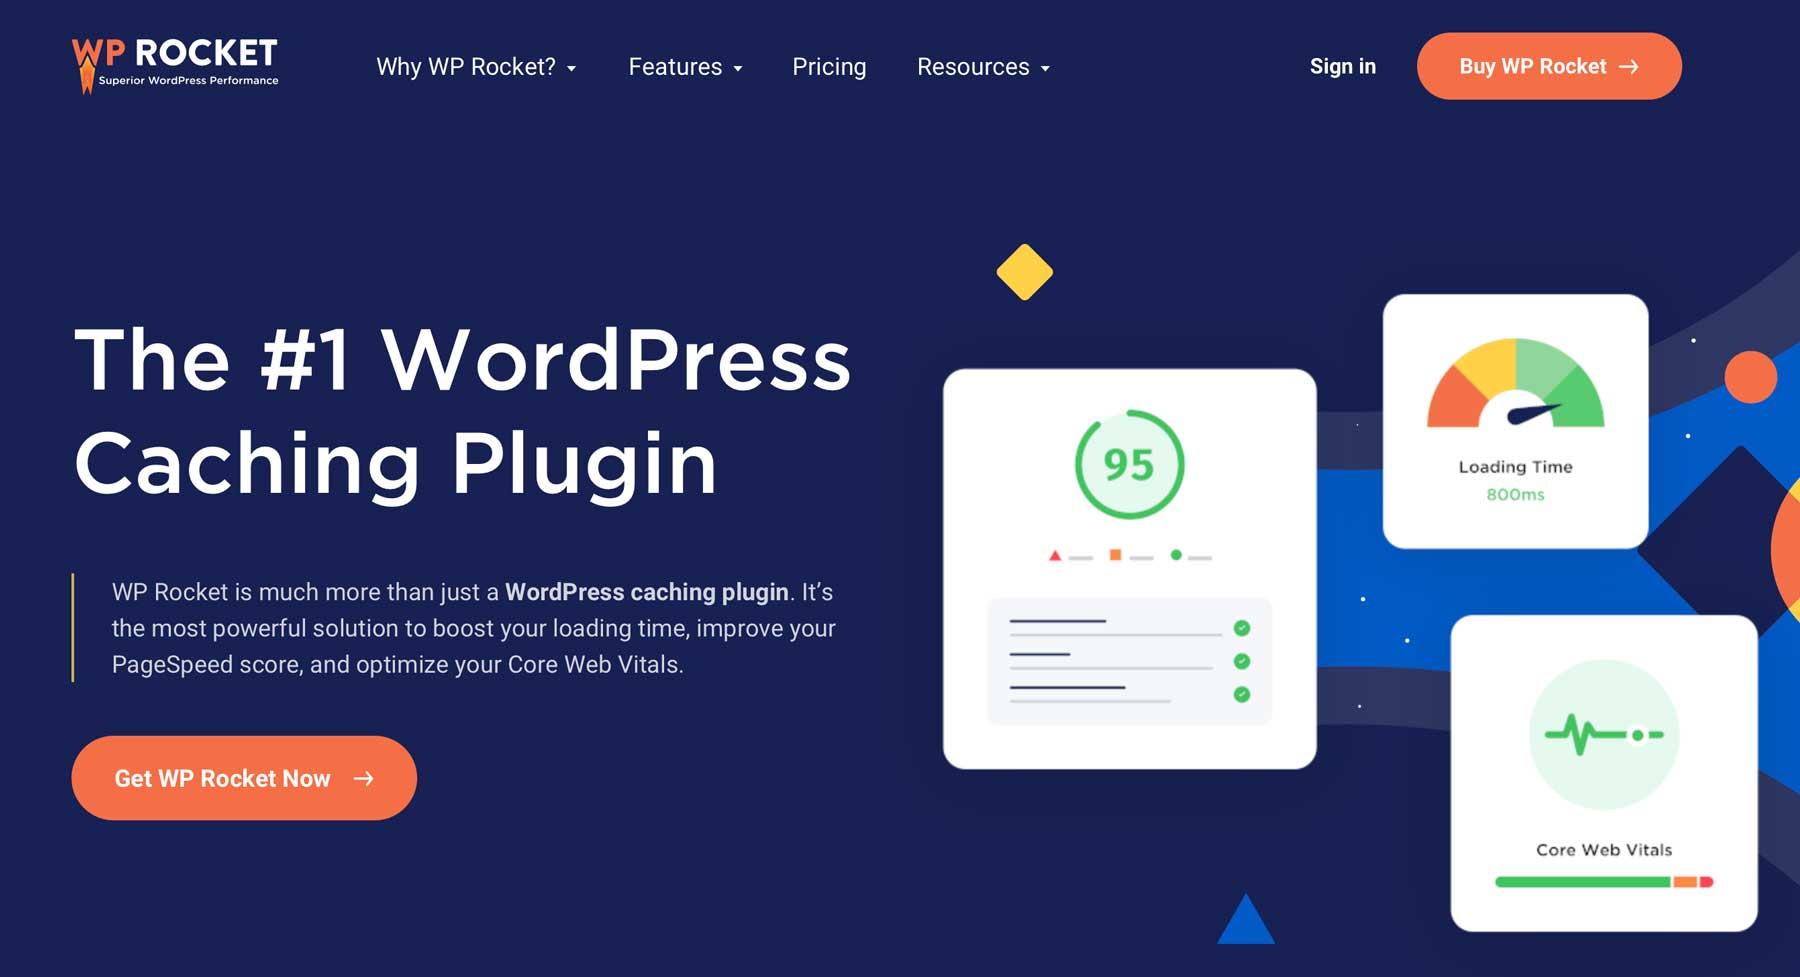 WP Rocket WordPress plugin